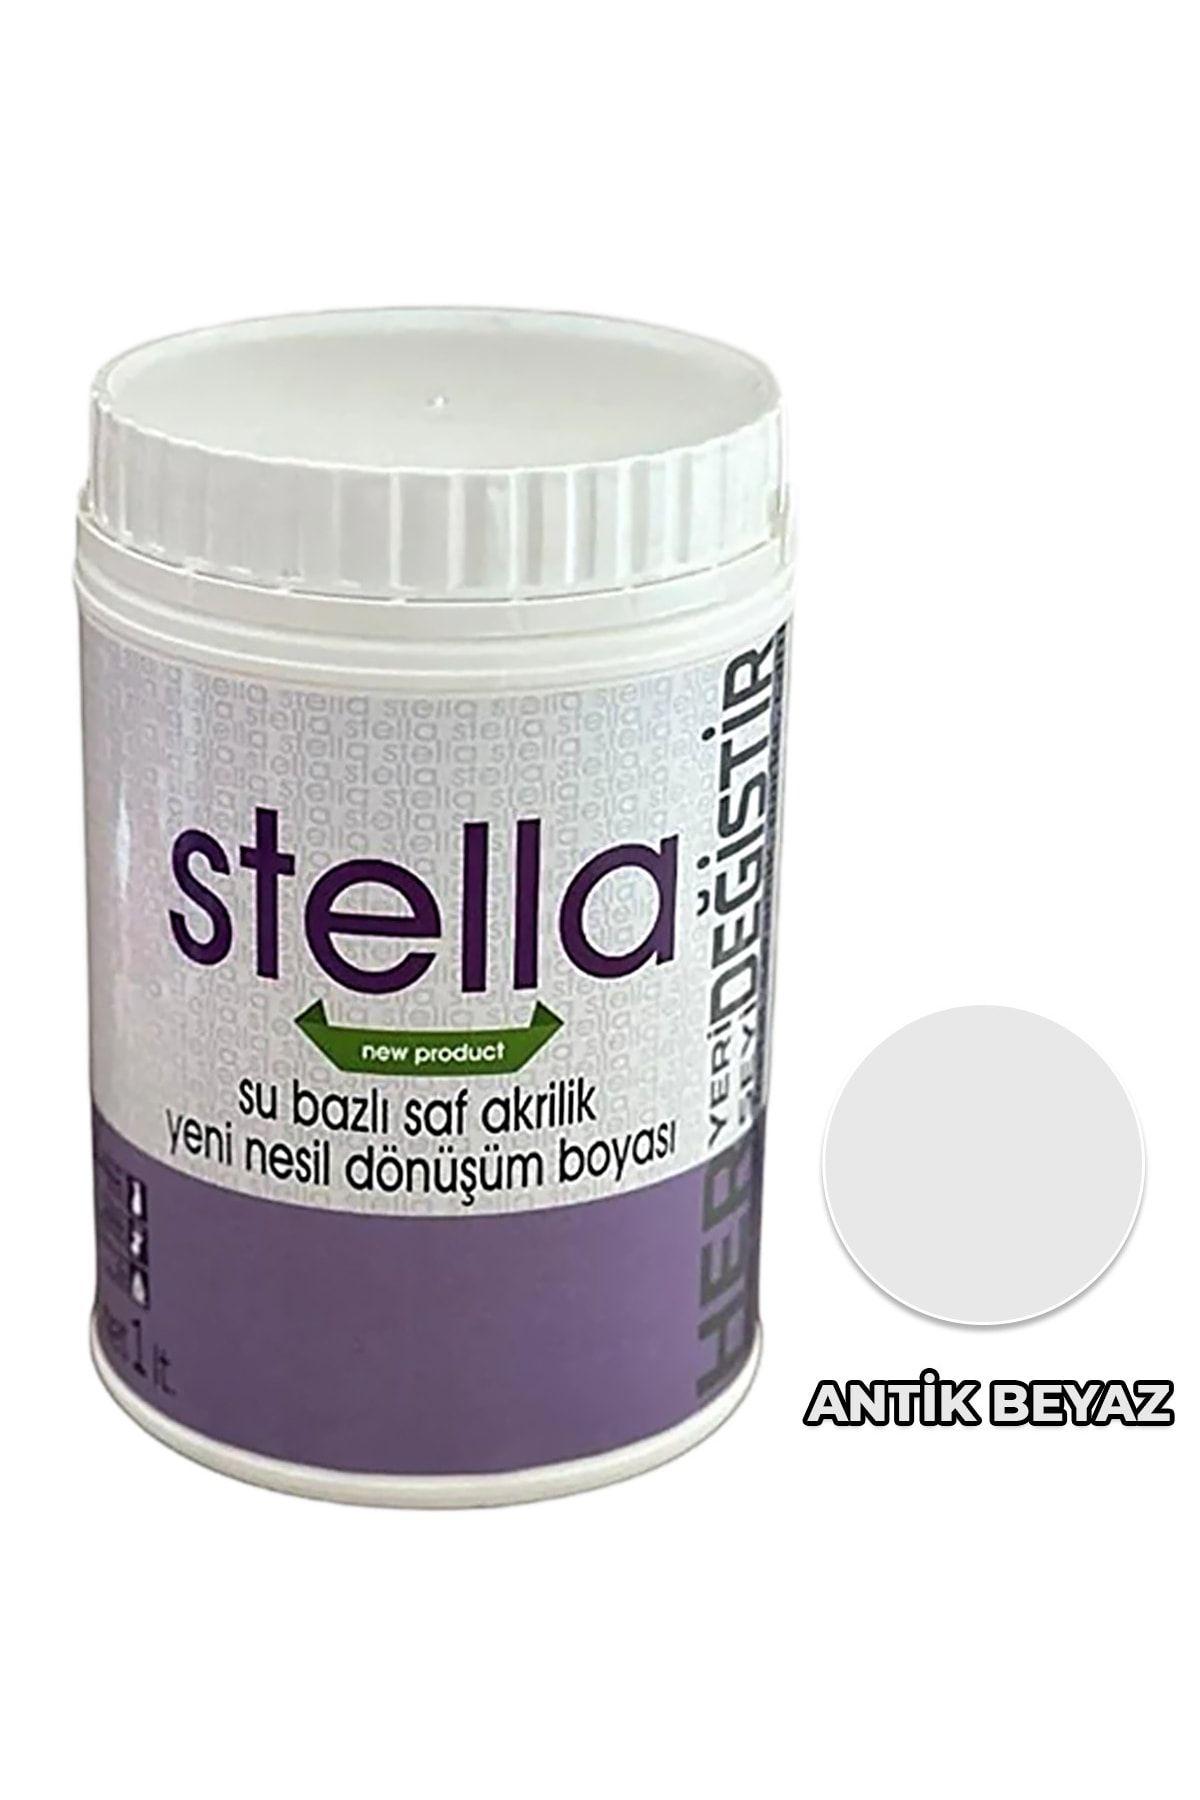 Stella Boya Su Bazlı Saf Akrilik Antik Beyaz 1 Lt